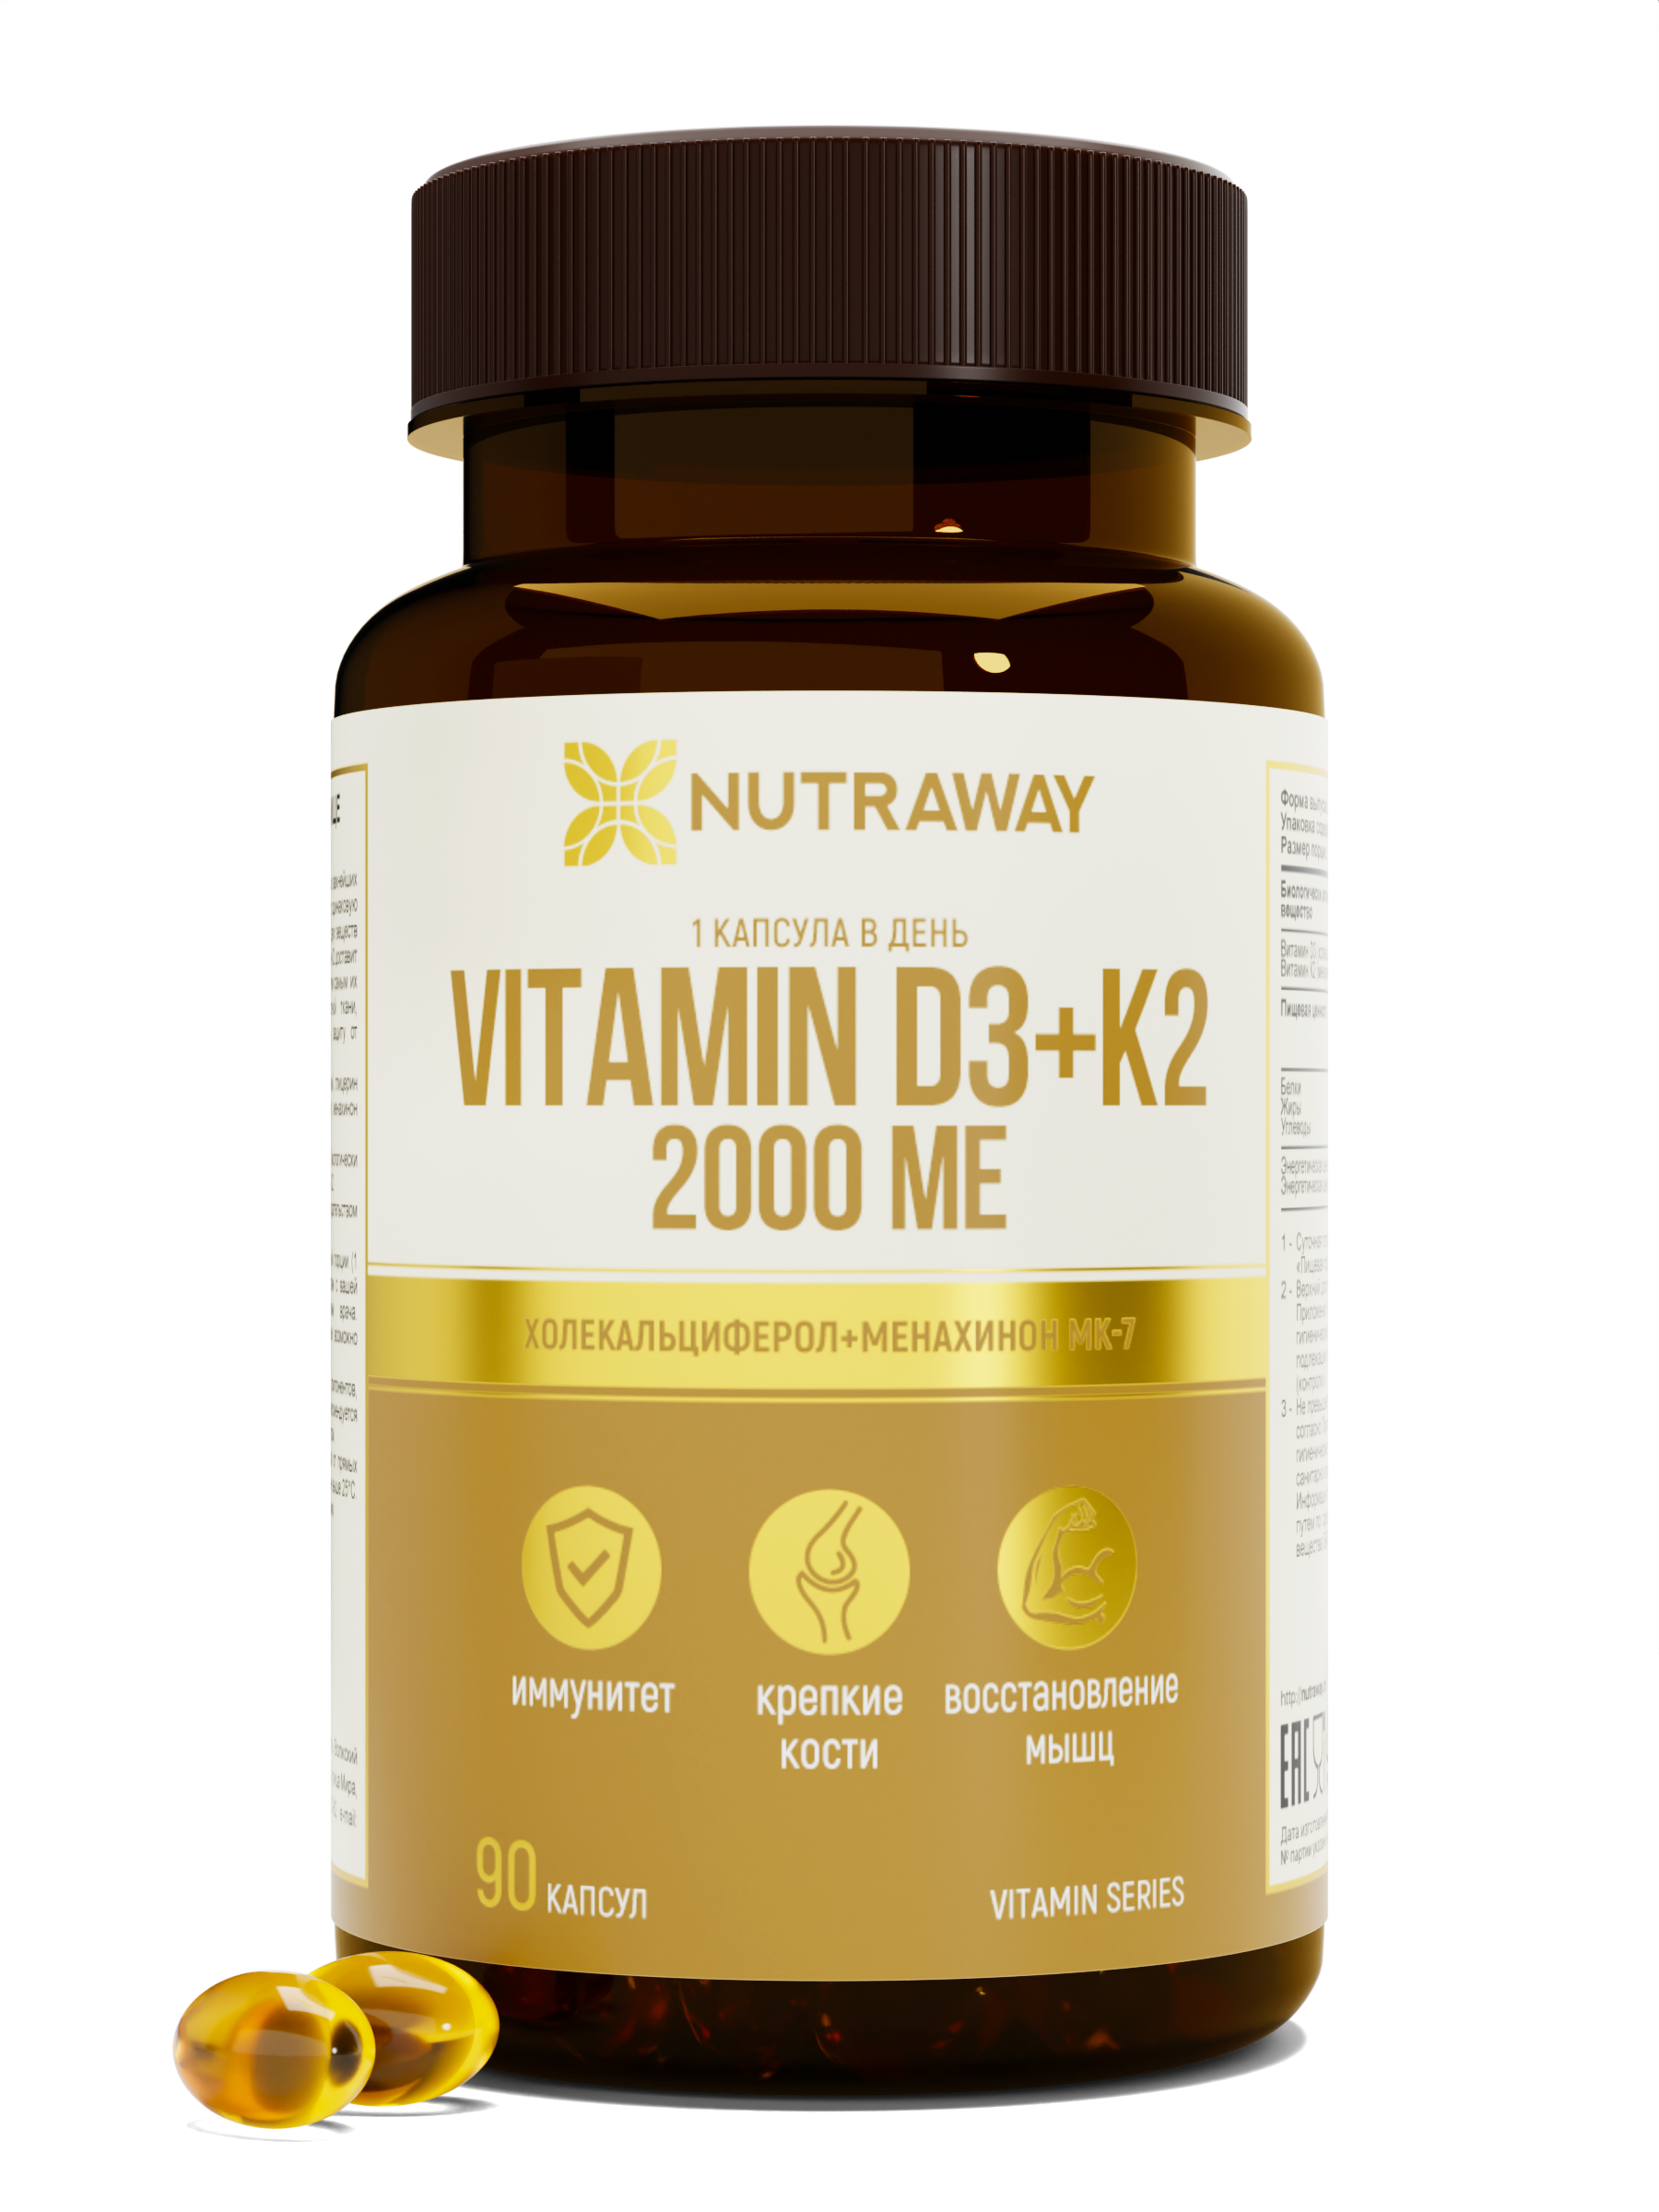 Купить Витамин Д3+К2 NUTRAWAY Vitamin D3+К2 2000 ME капсулы 90 шт.